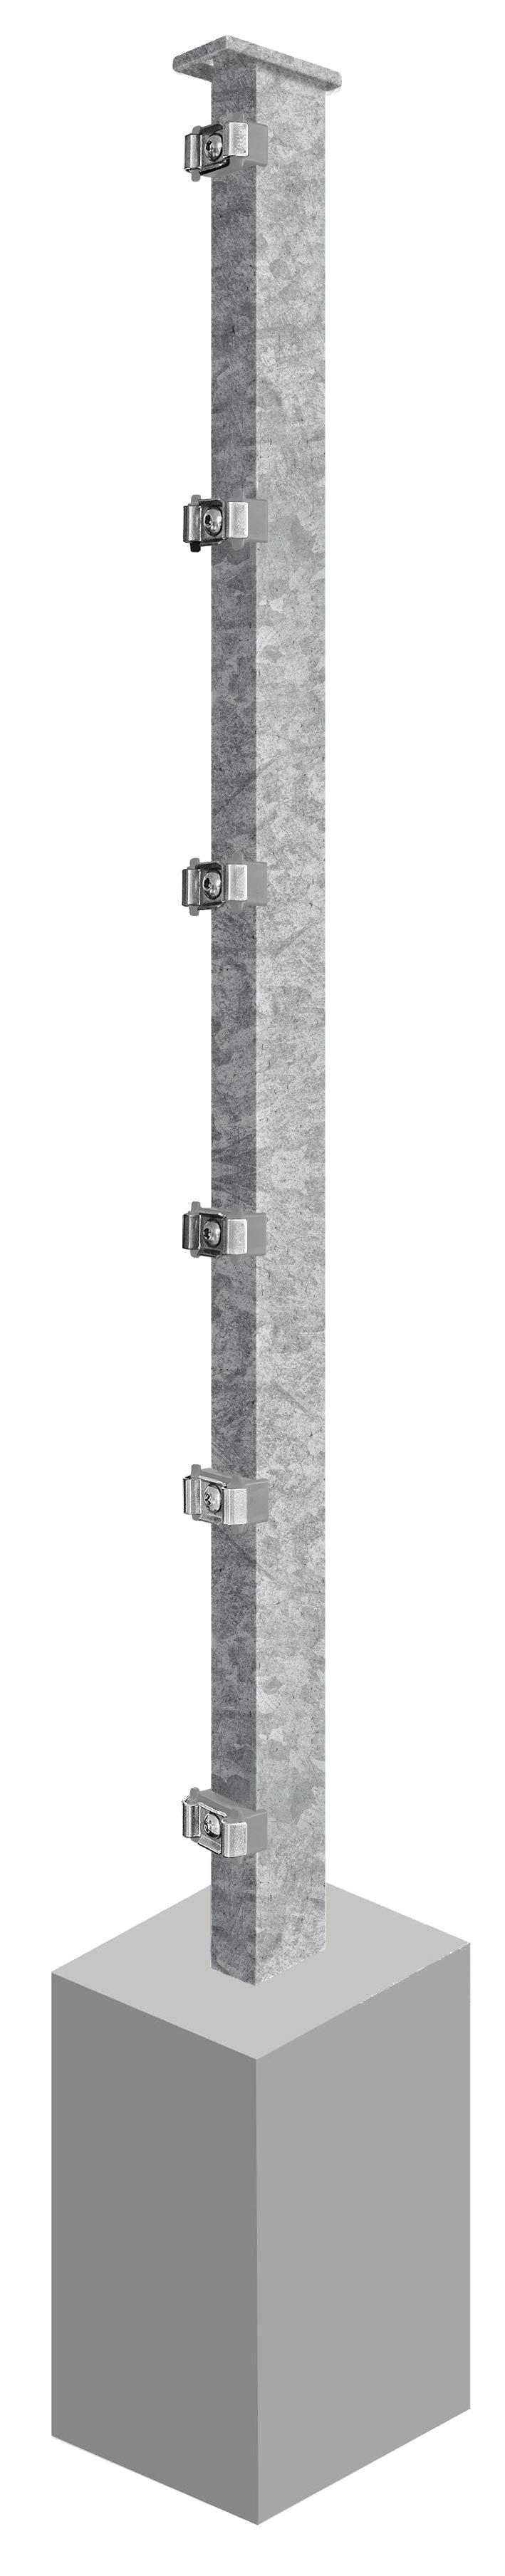 Pfosten System AC-Typ PSLF, für Zaunhöhe 1.830 mm